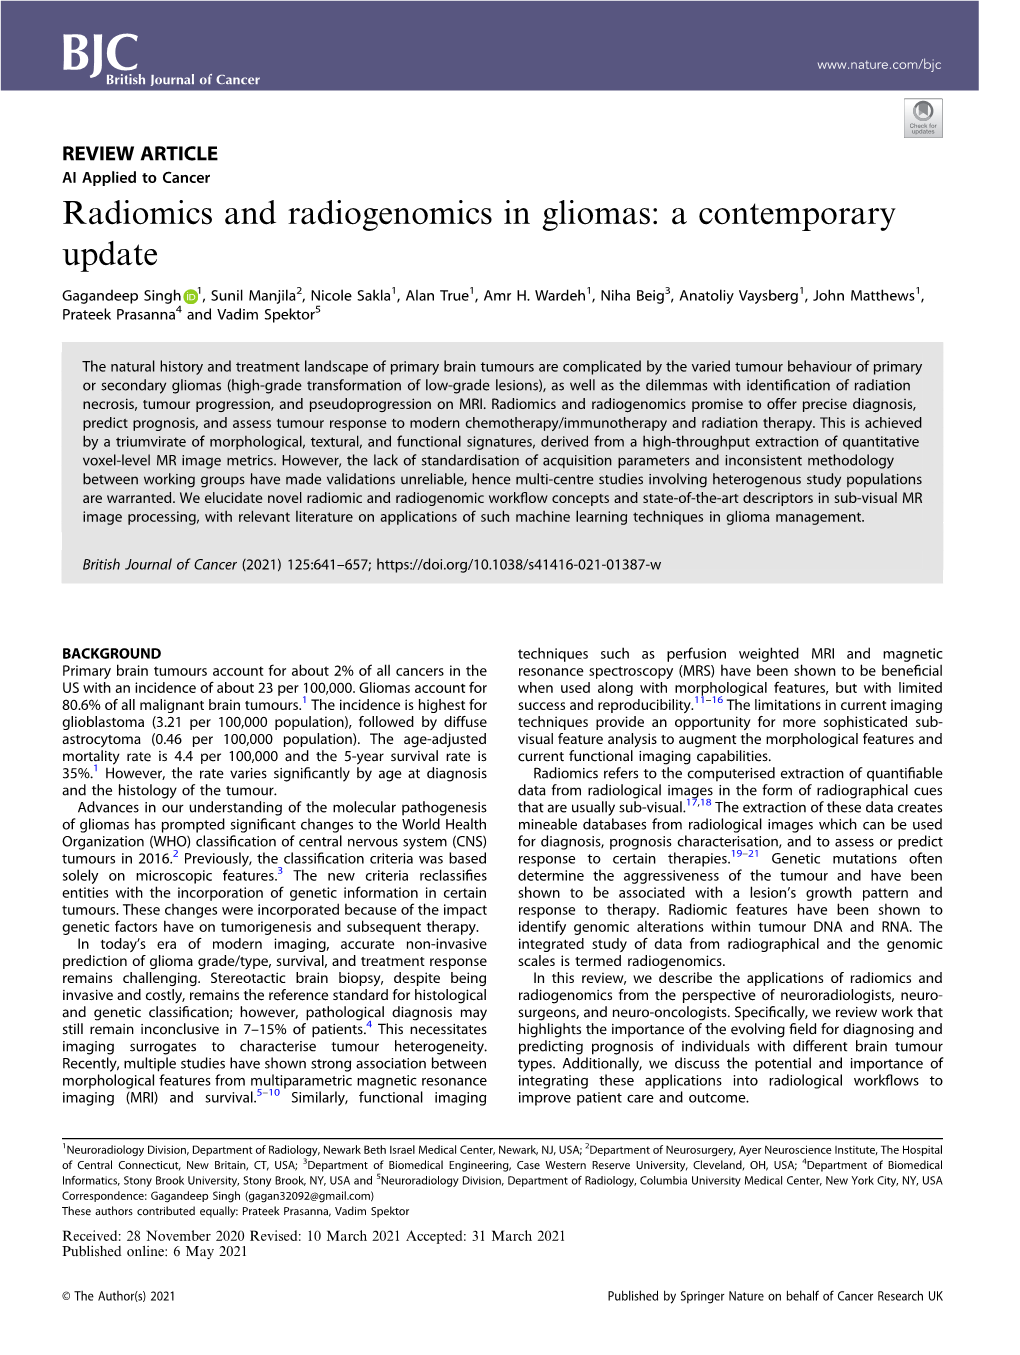 Radiomics and Radiogenomics in Gliomas: a Contemporary Update